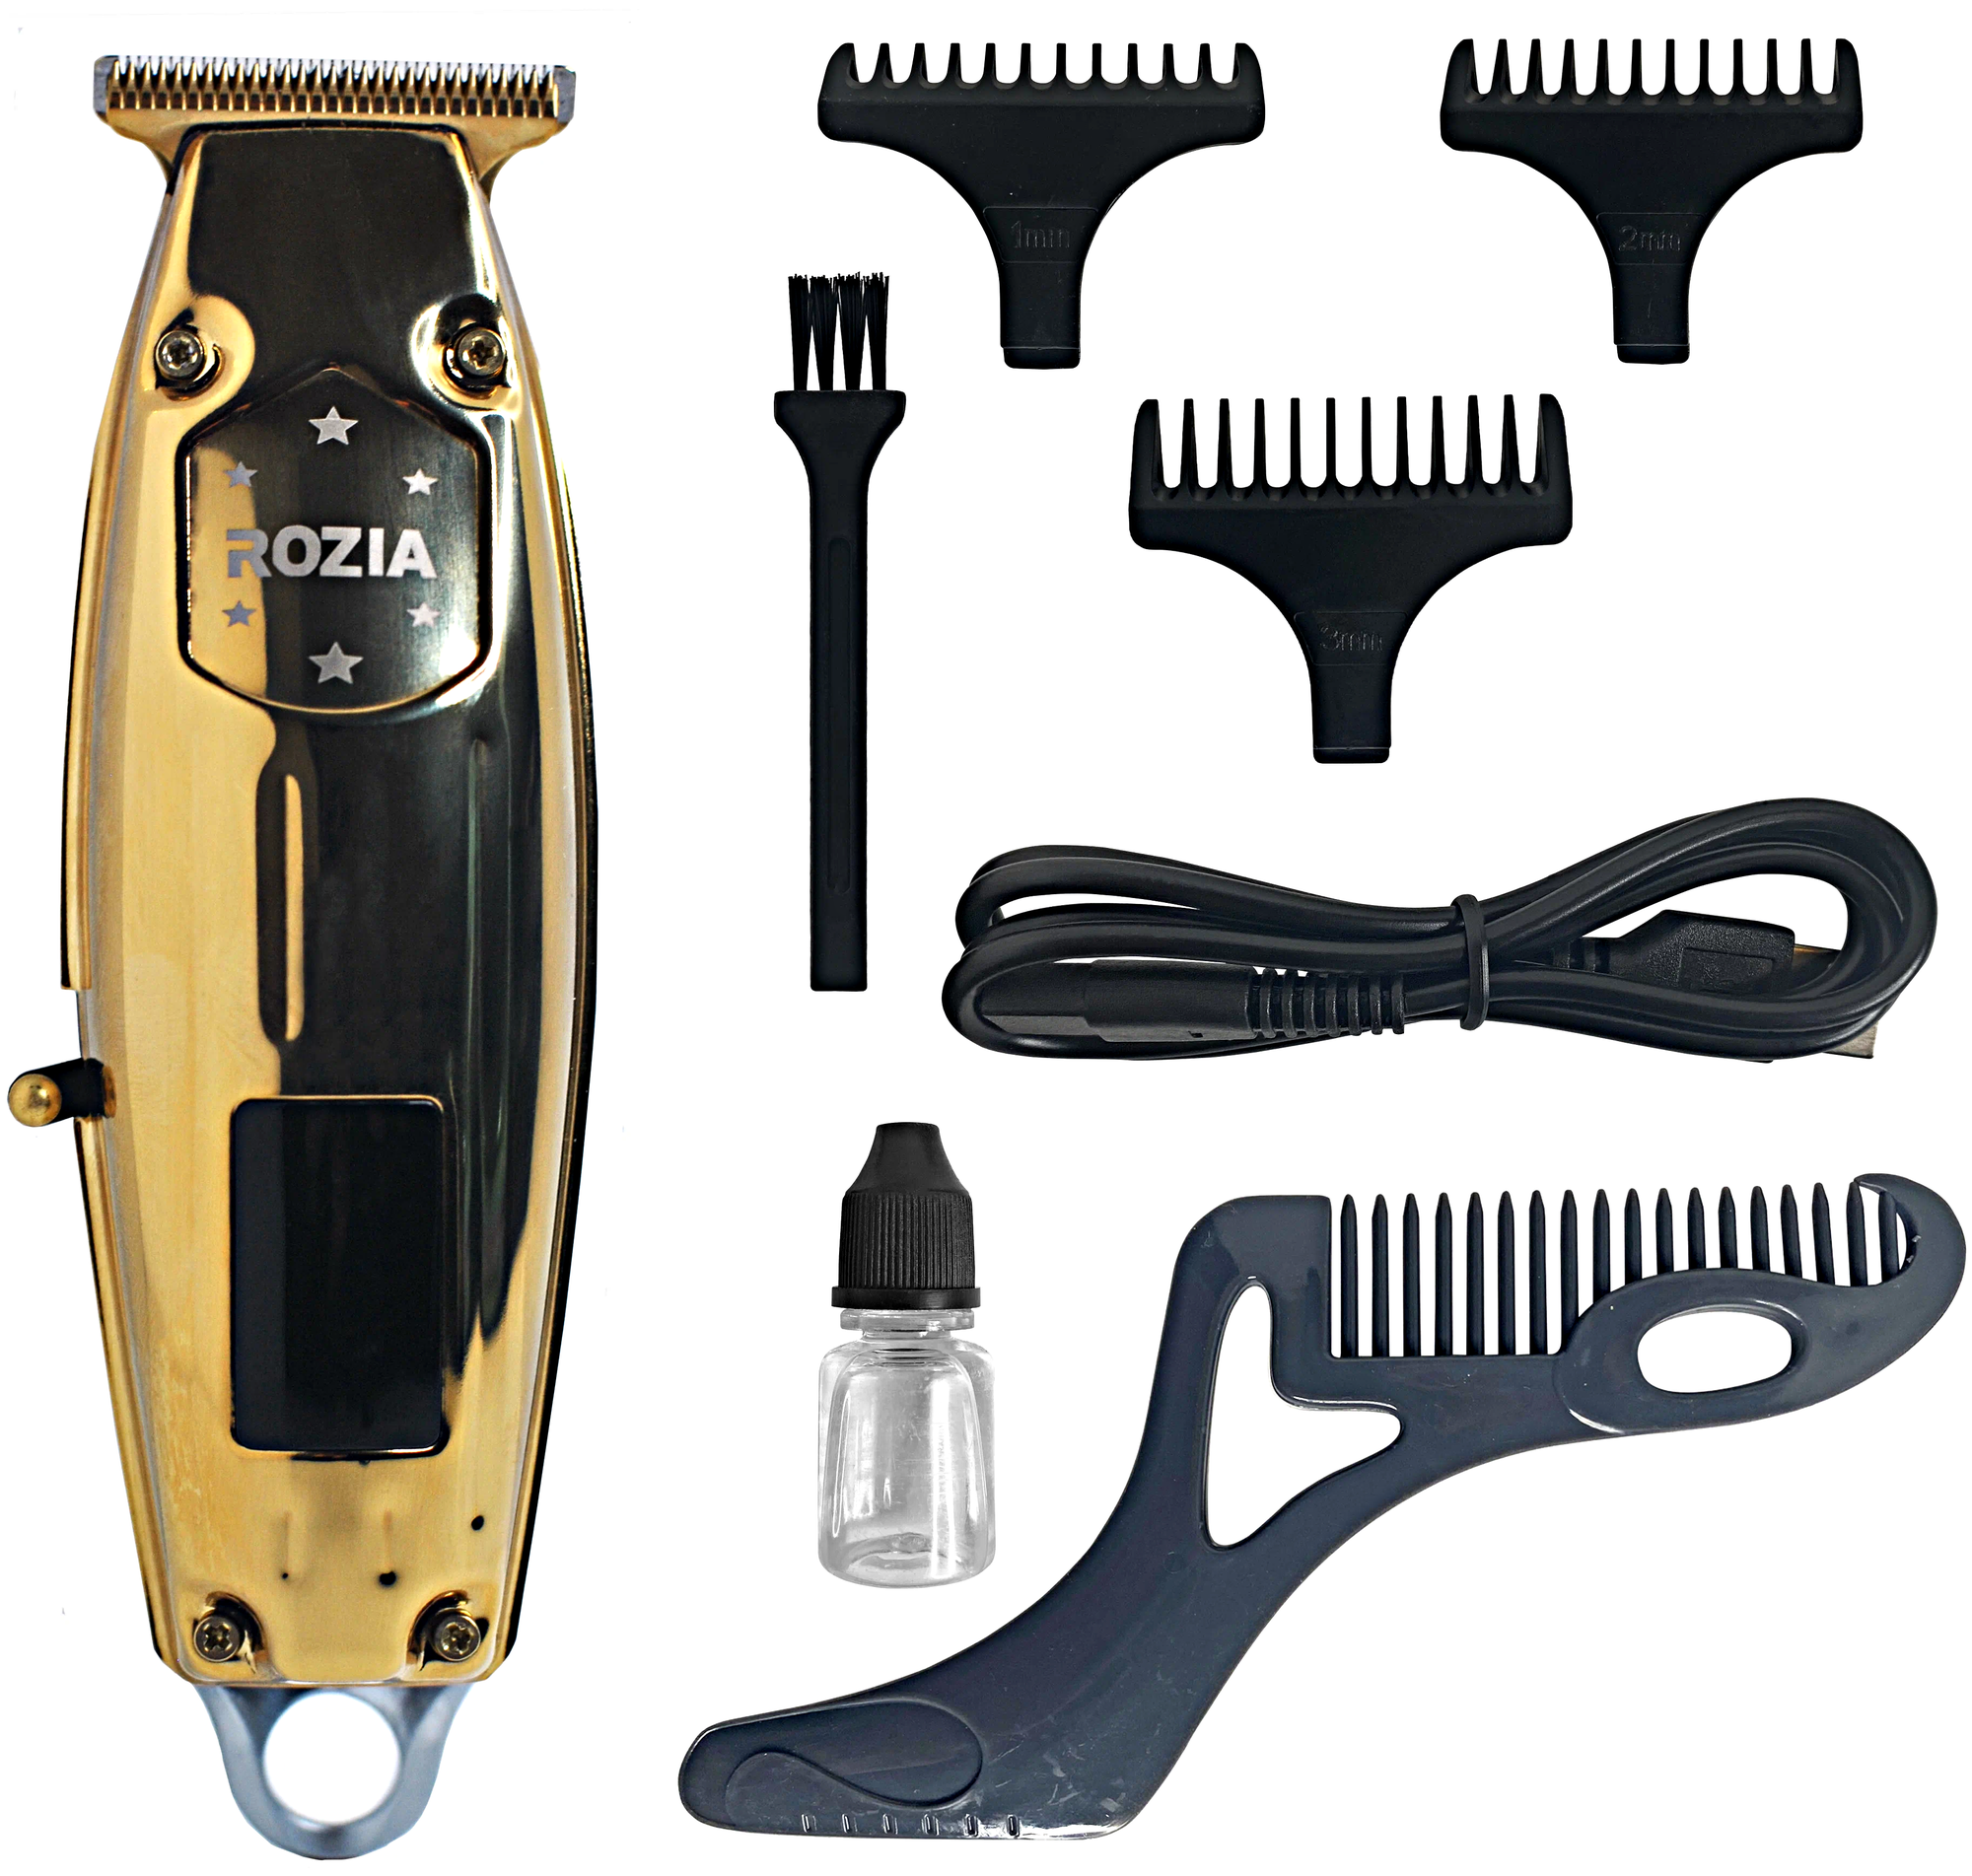 Машинка для стрижки волос Розия, Профессиональный триммер для стрижки волос, для бороды, усов, Золотистый